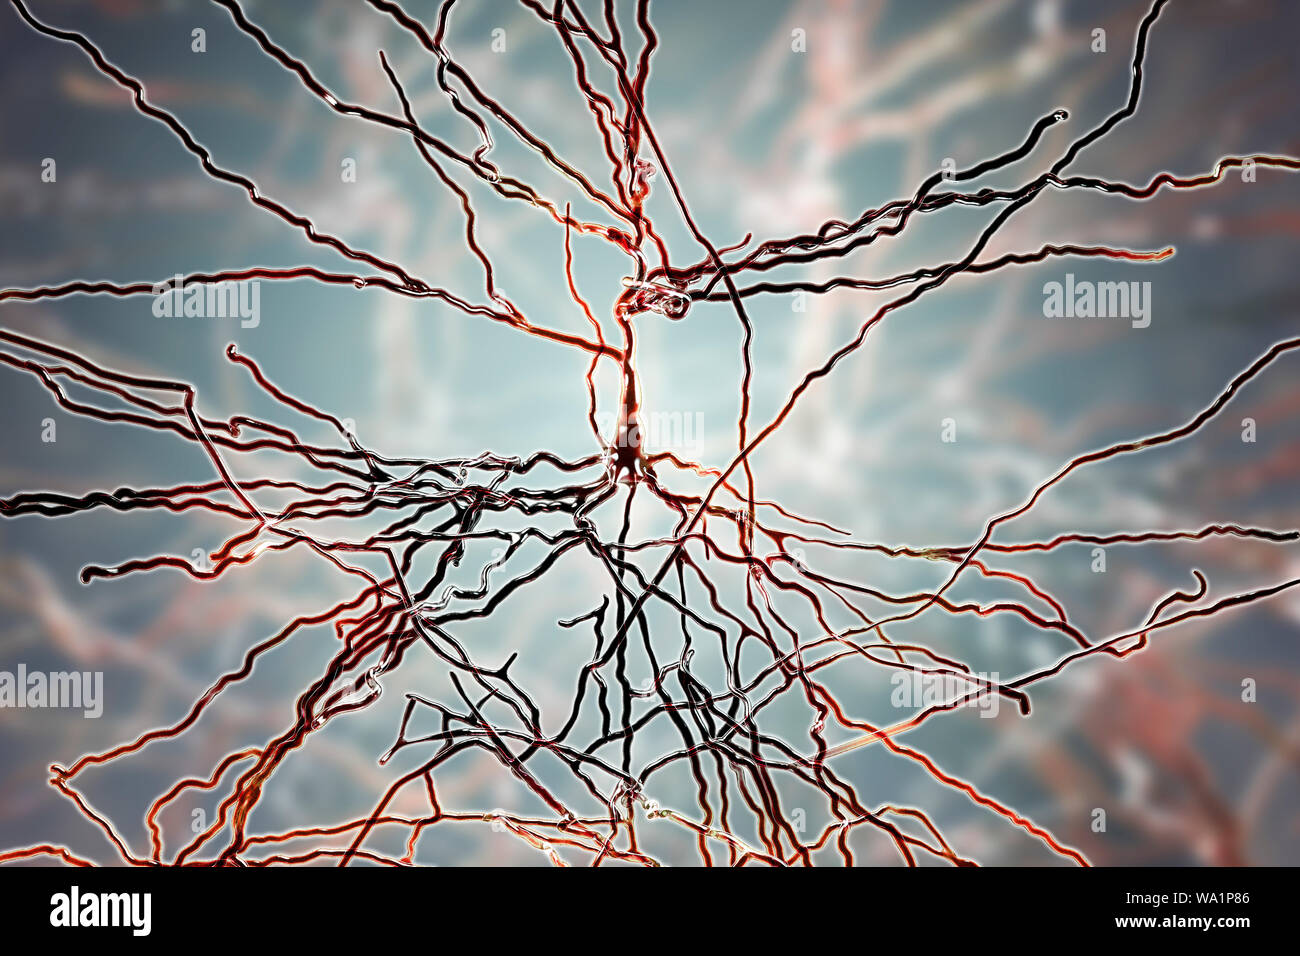 Les neurones pyramidaux. Illustration des neurones pyramidaux du cortex cérébral du cerveau. Les cellules pyramidales sont ainsi nommé pour leurs corps cellulaires triangulaire. Chaque cellule corps a de nombreux processus (dendrites) qui recueillent et transmettent des informations à partir d'autres cellules nerveuses et des cellules sensorielles. Chaque cellule possède également un corps menant de l'axone, à travers lequel il transmet les informations à d'autres cellules. Banque D'Images